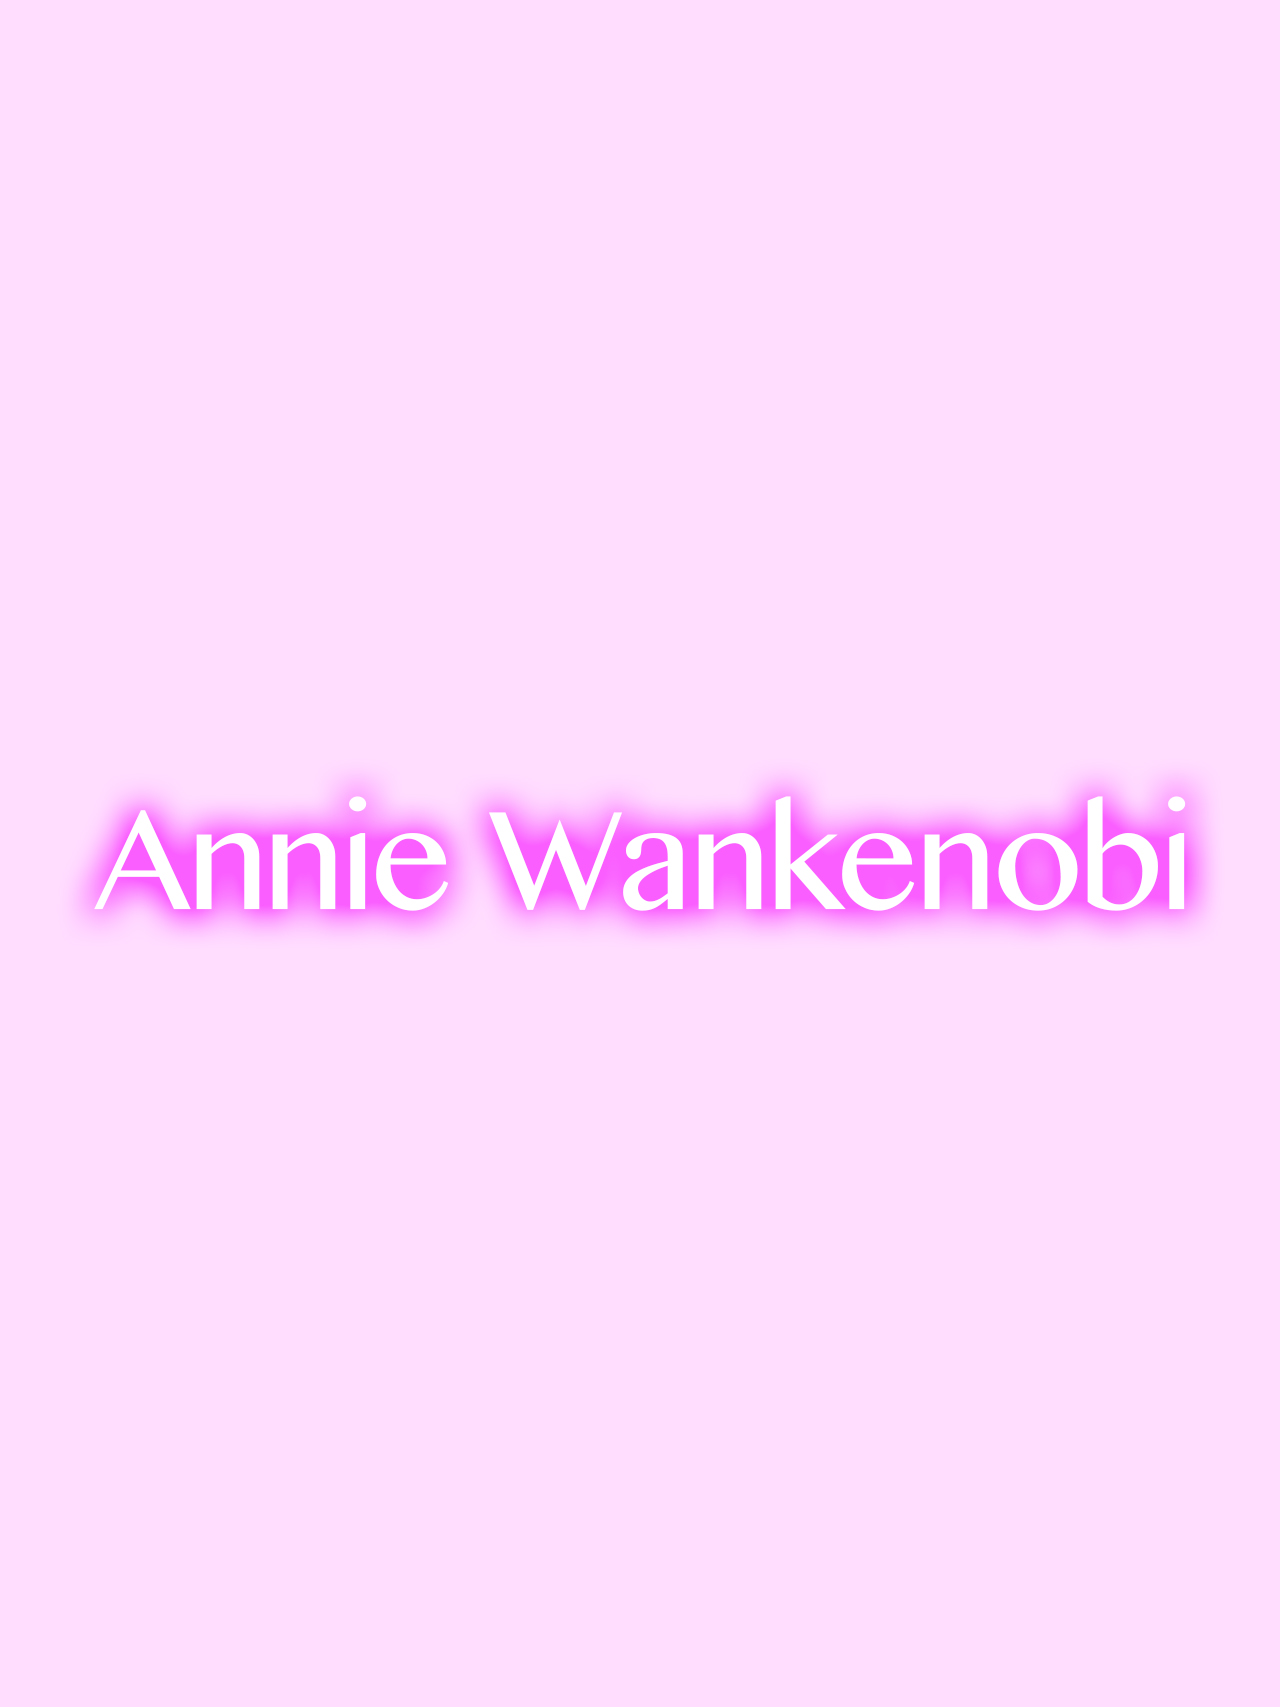 Annie Wankenobi